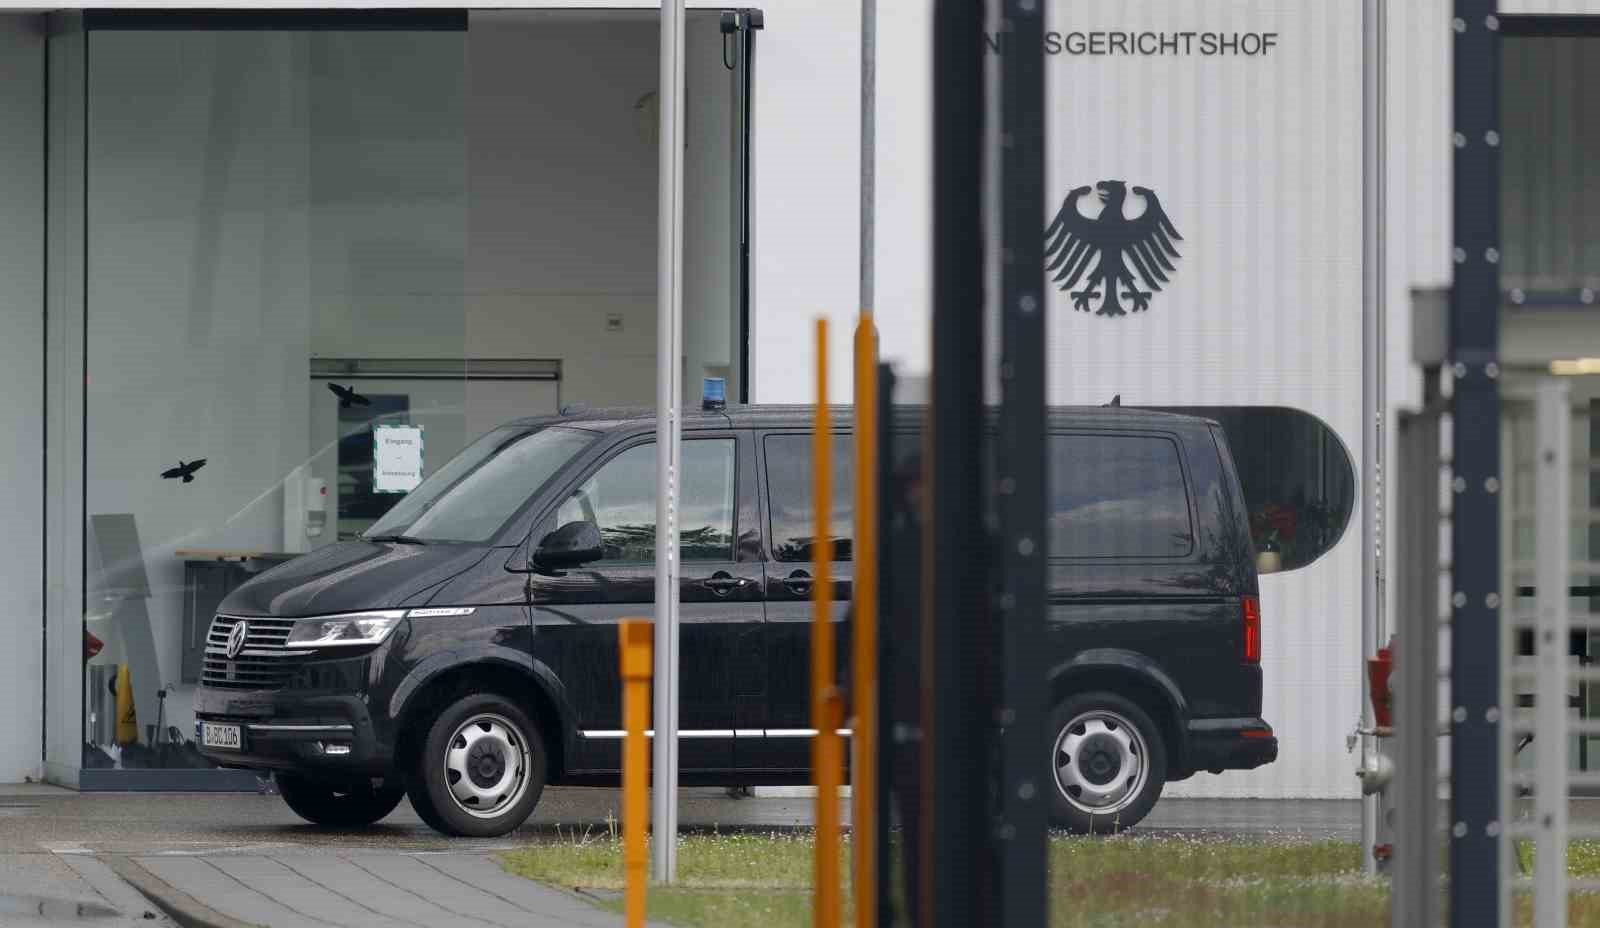 Almanya’da Rusya’ya casusluk yaptığı gerekçesiyle 2 kişi gözaltına alındı
